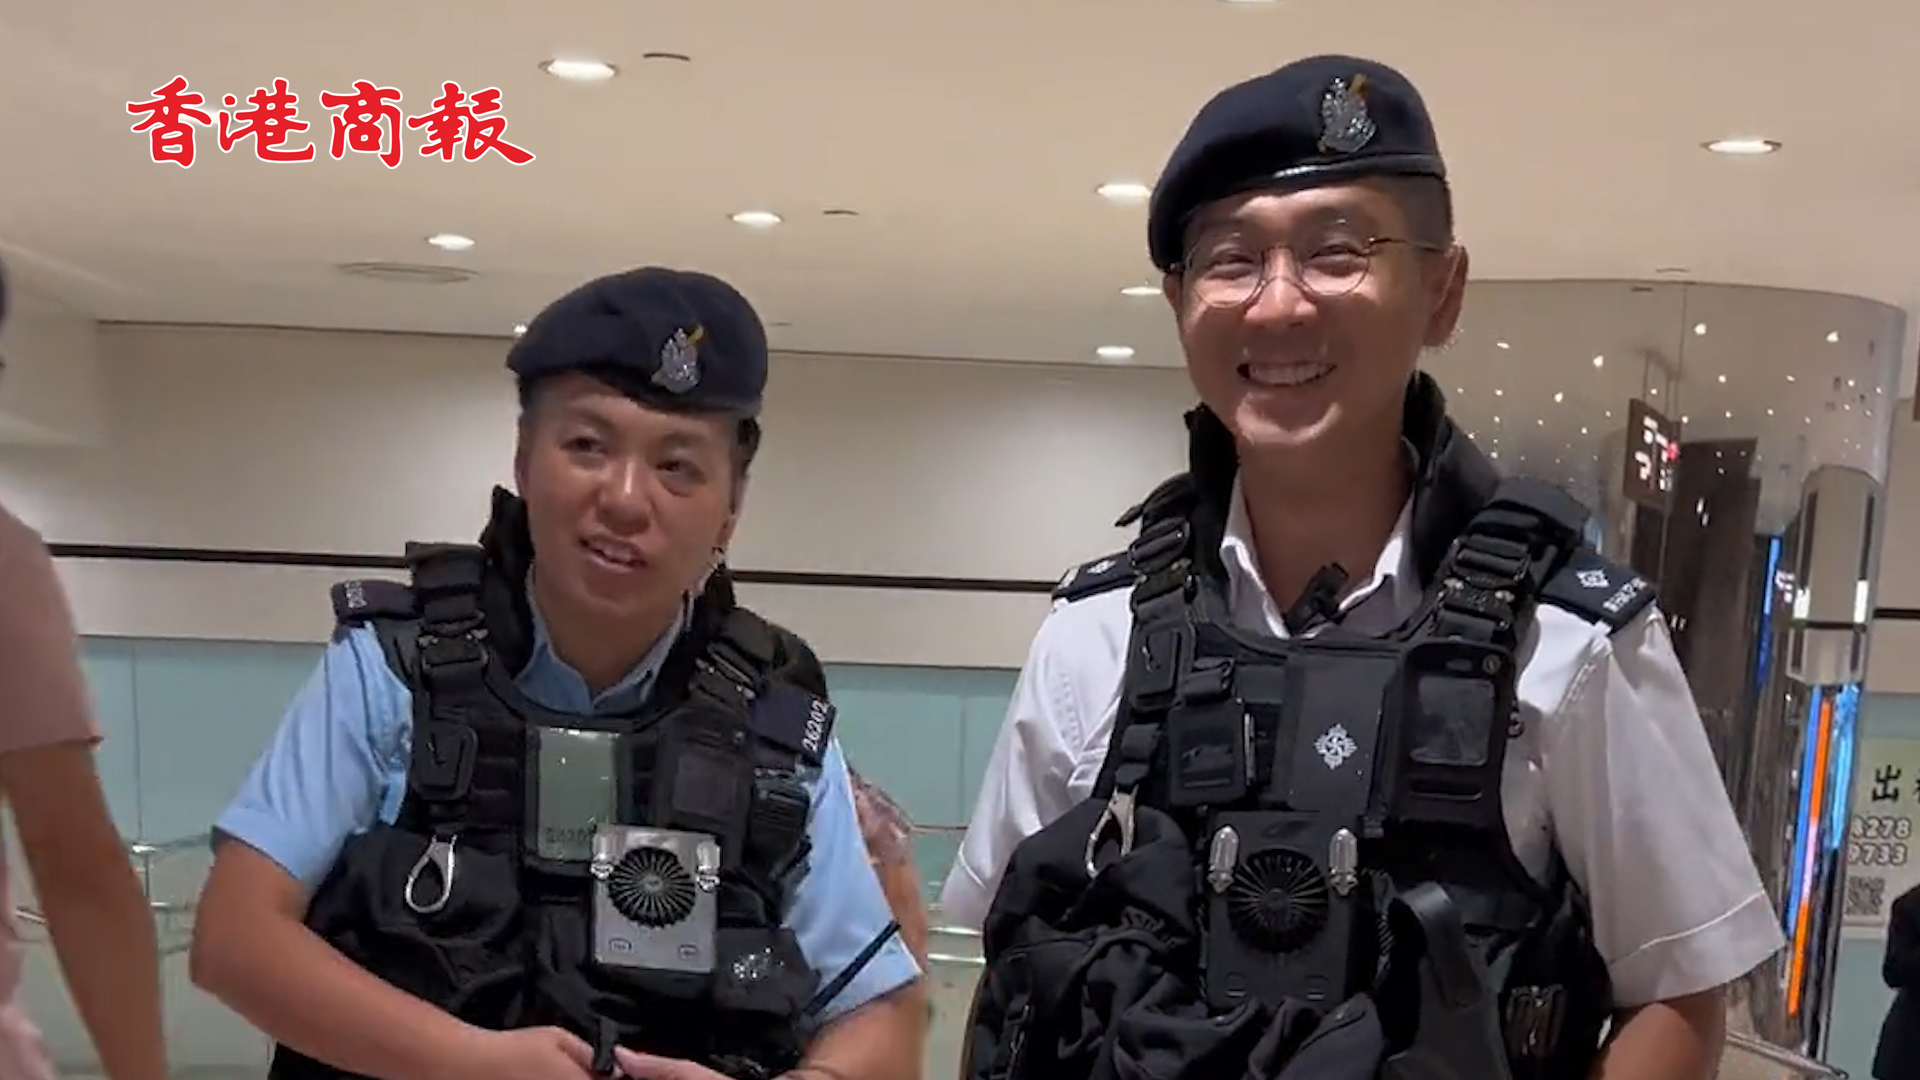 有片丨浙江遊客在香港偶遇警察 詢問能否拍個視頻 阿sir禮貌微笑配合